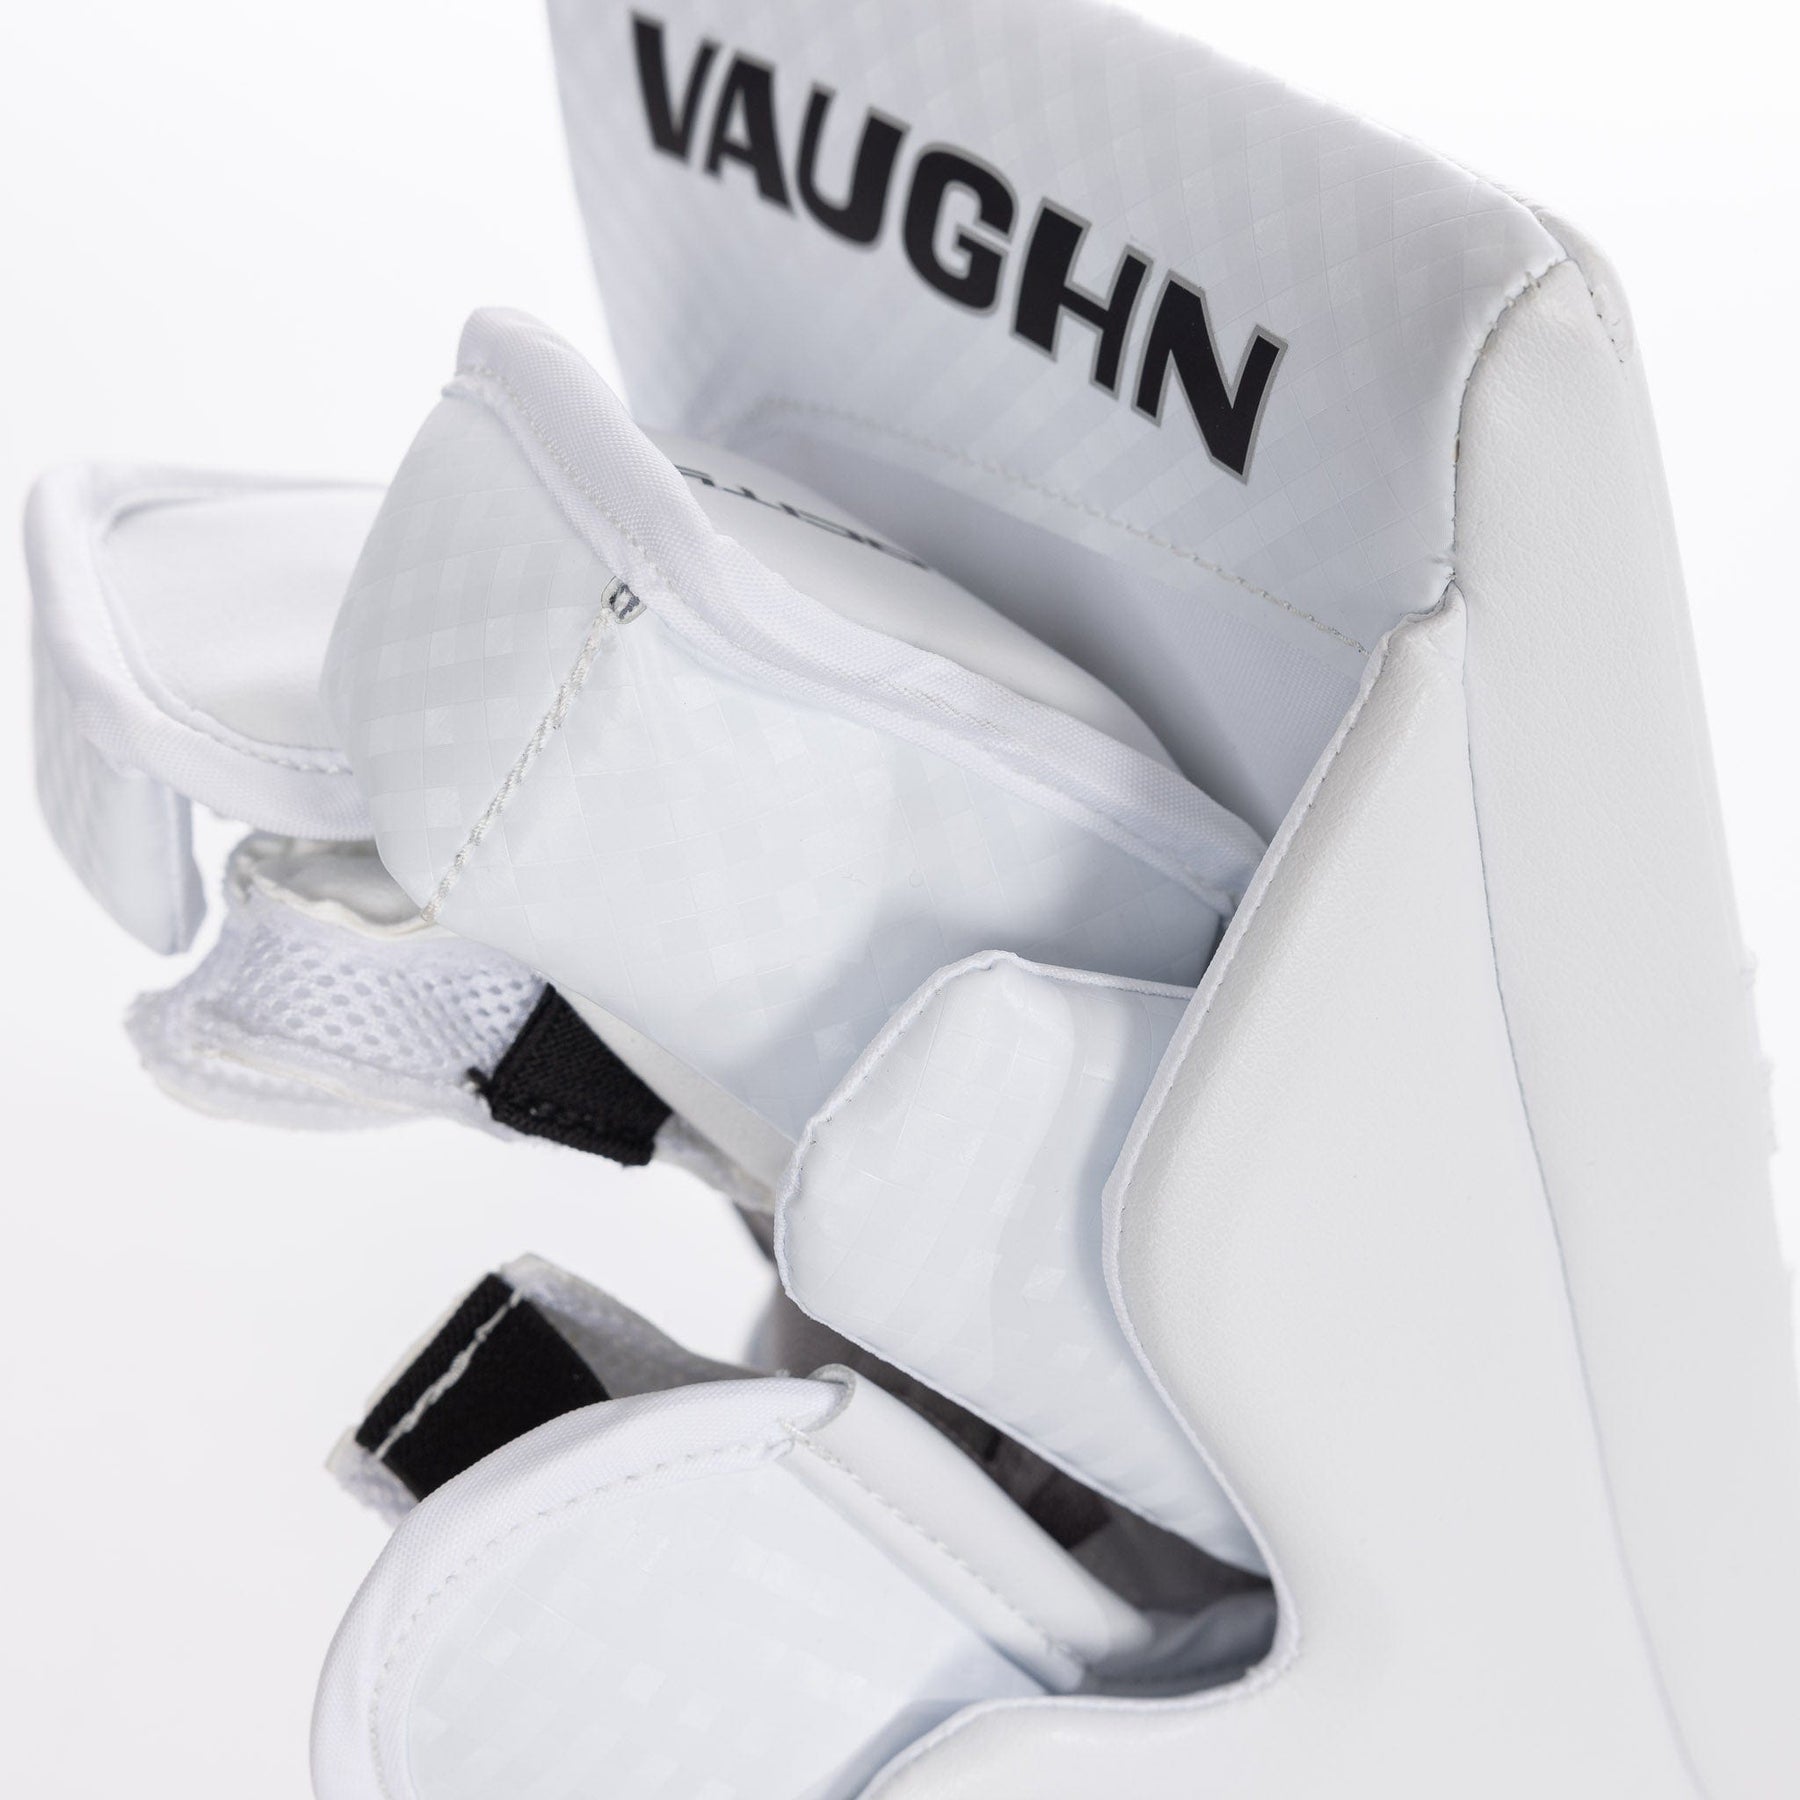 Vaughn Velocity Pro Goalie Blocker - Senior - White/Black